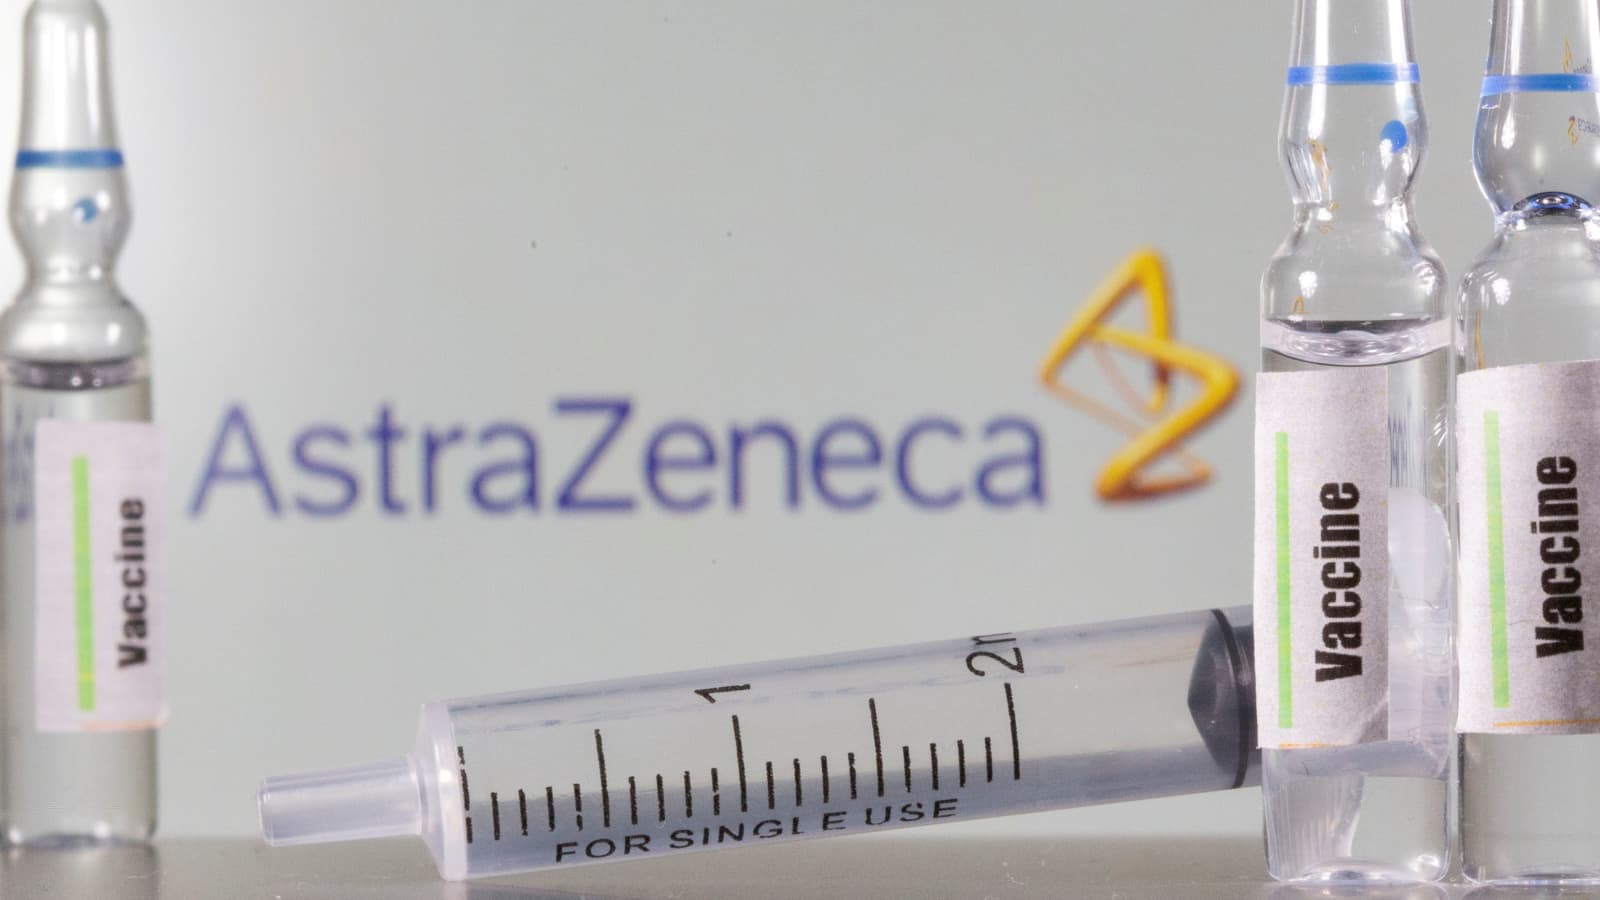 Astrazeneca gap between doses